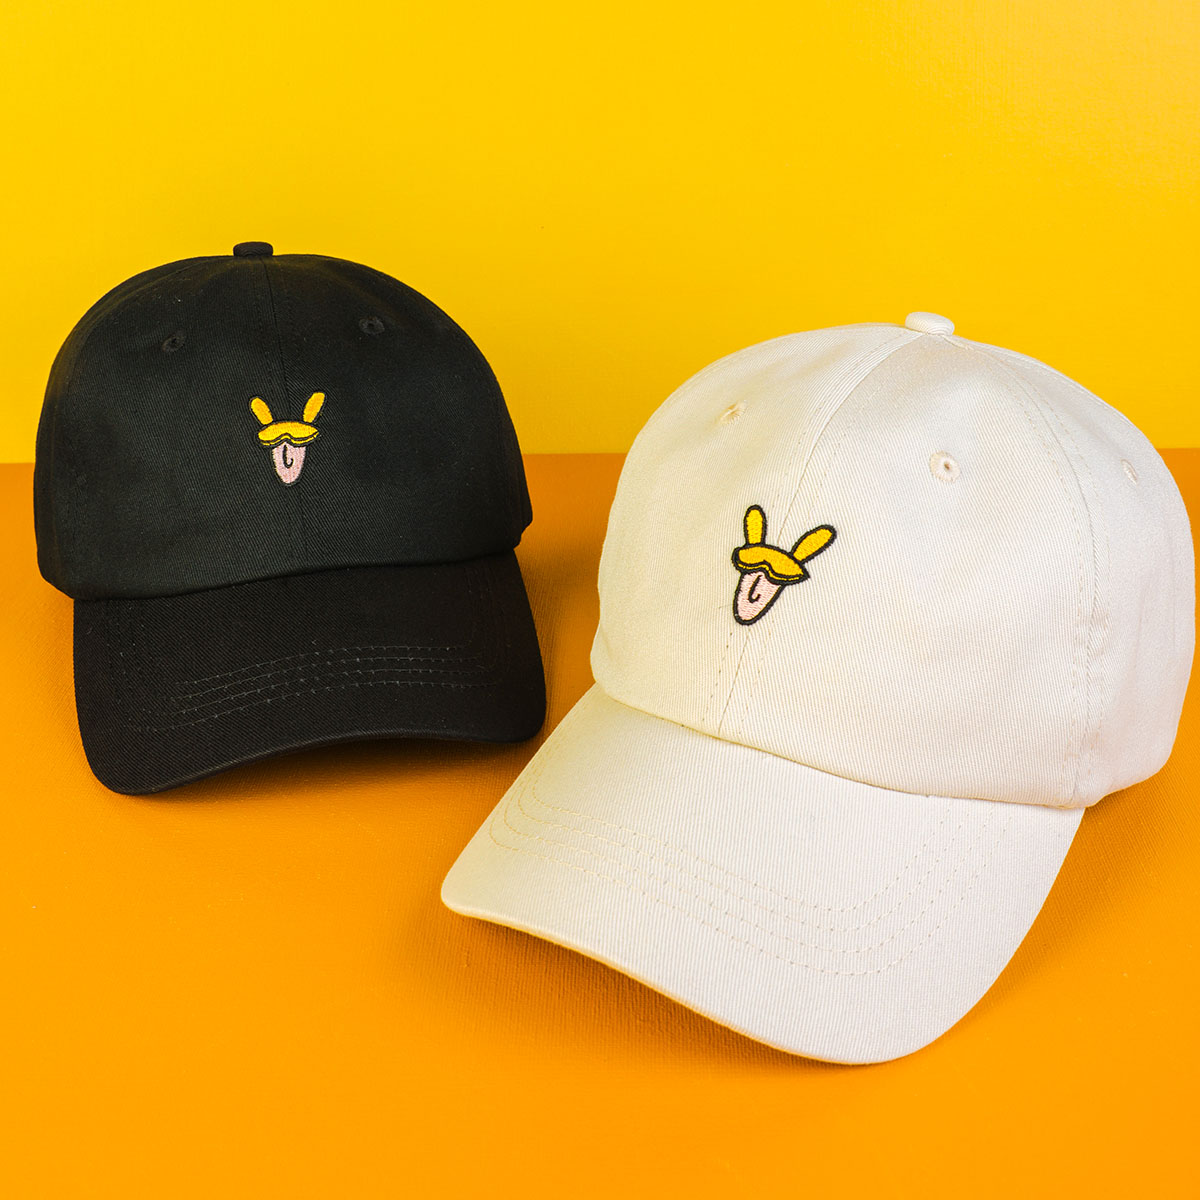 broderie vfa logo sports casquettes de baseball chapeaux personnalisés